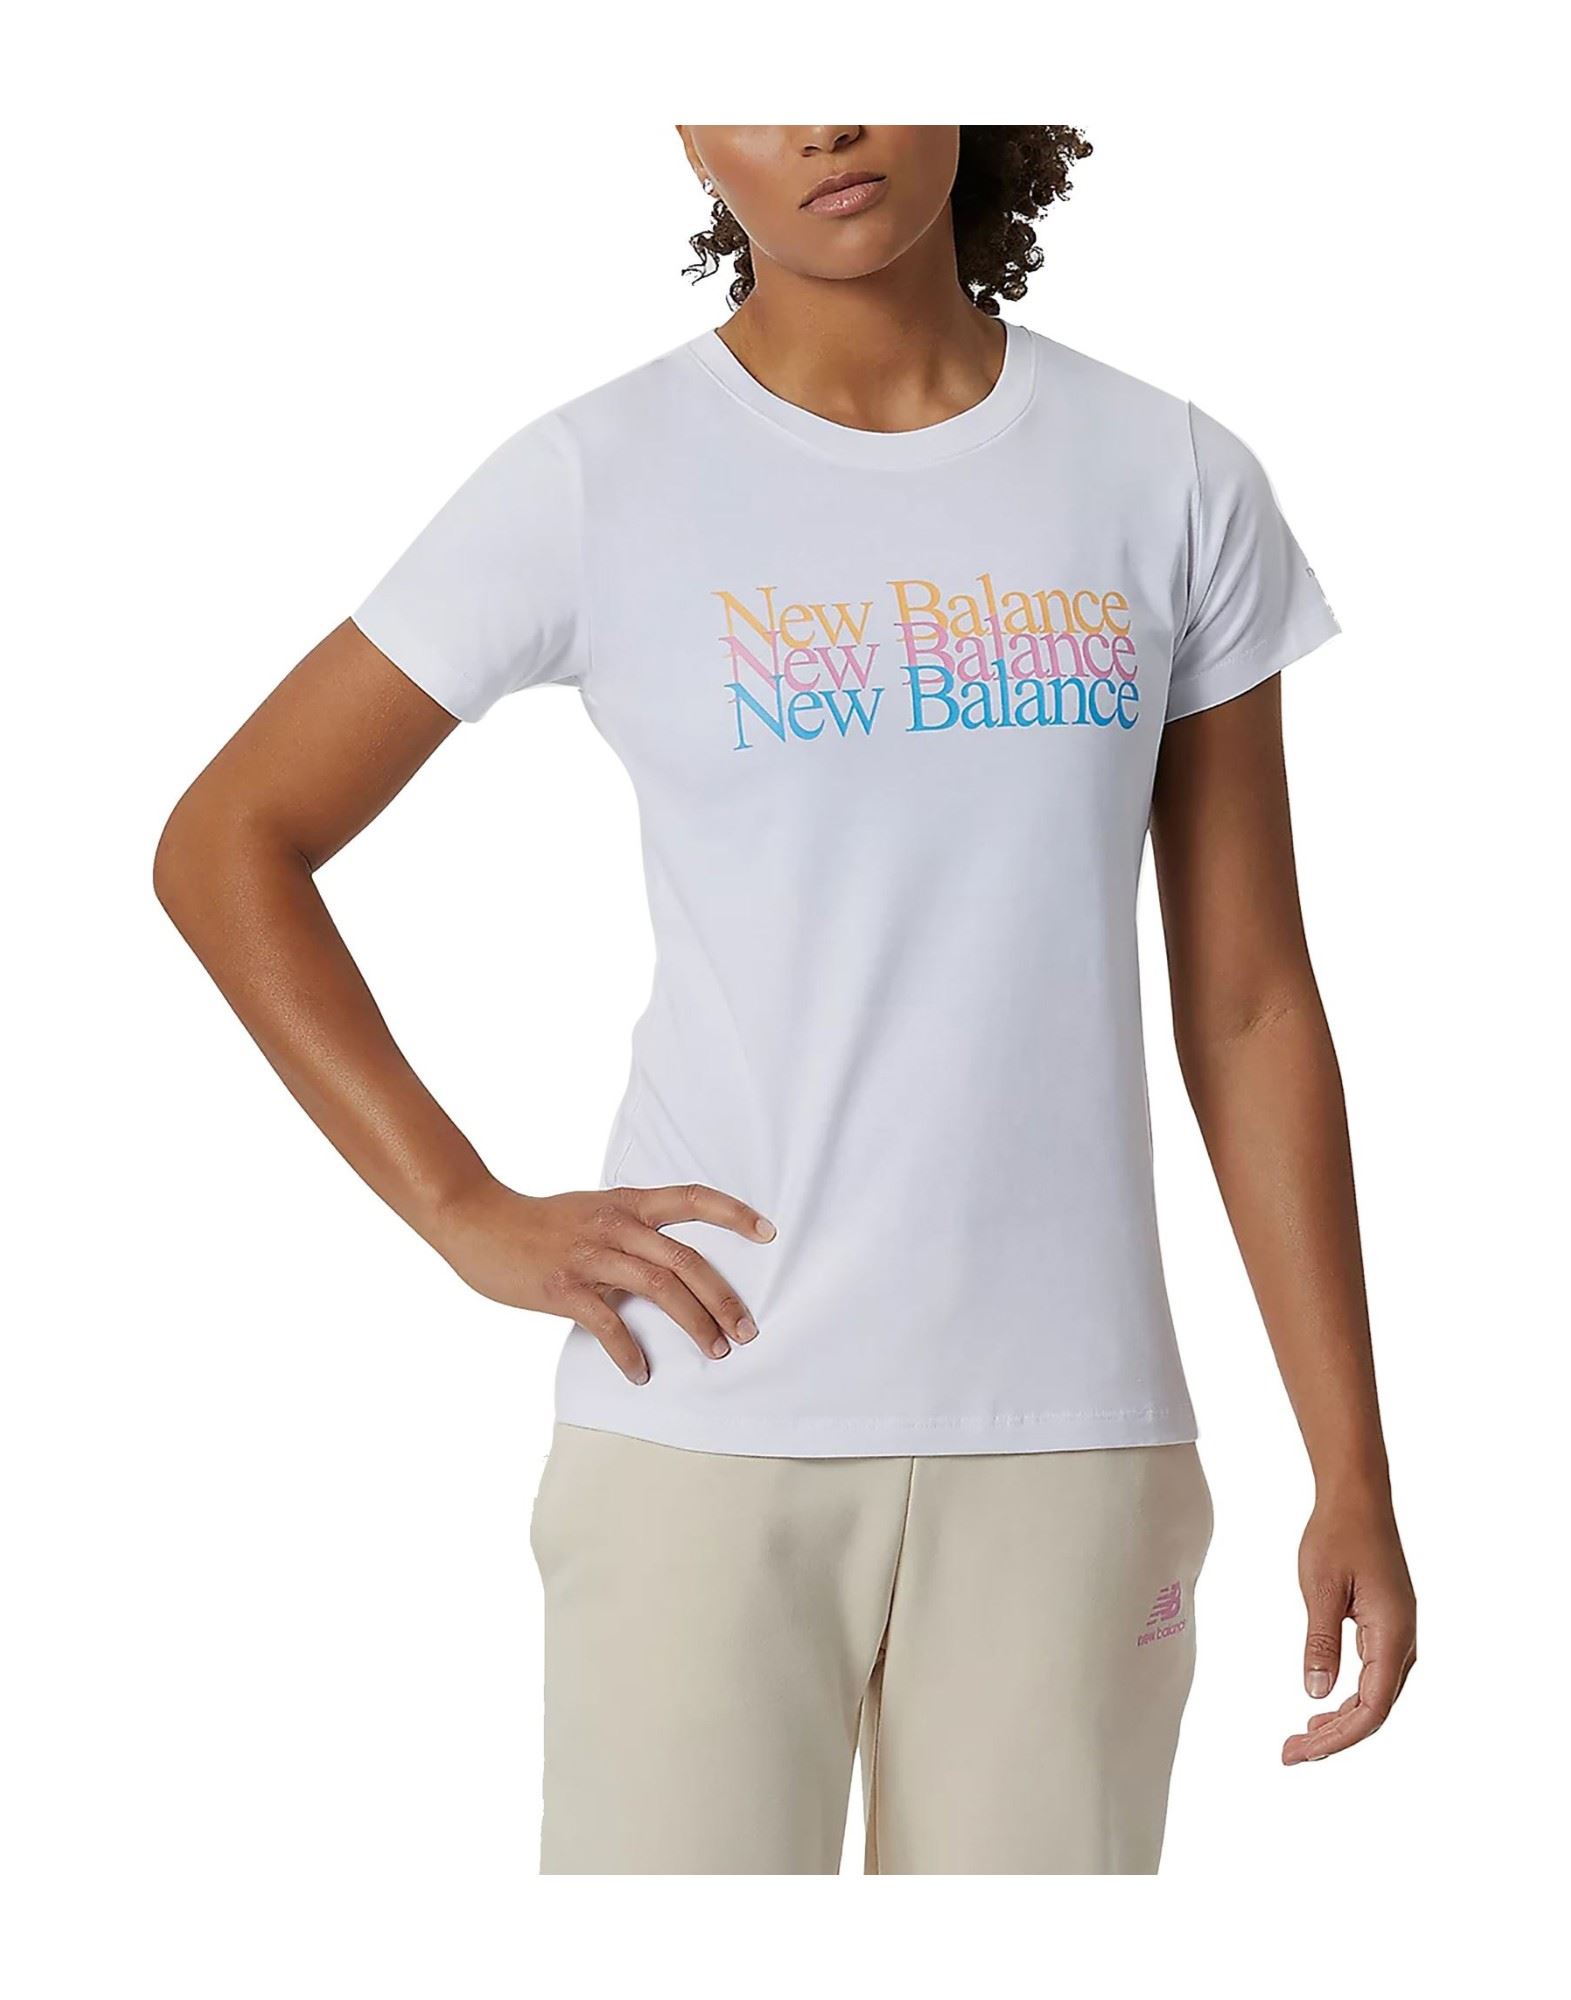 NEW BALANCE T-shirts Damen Weiß von NEW BALANCE